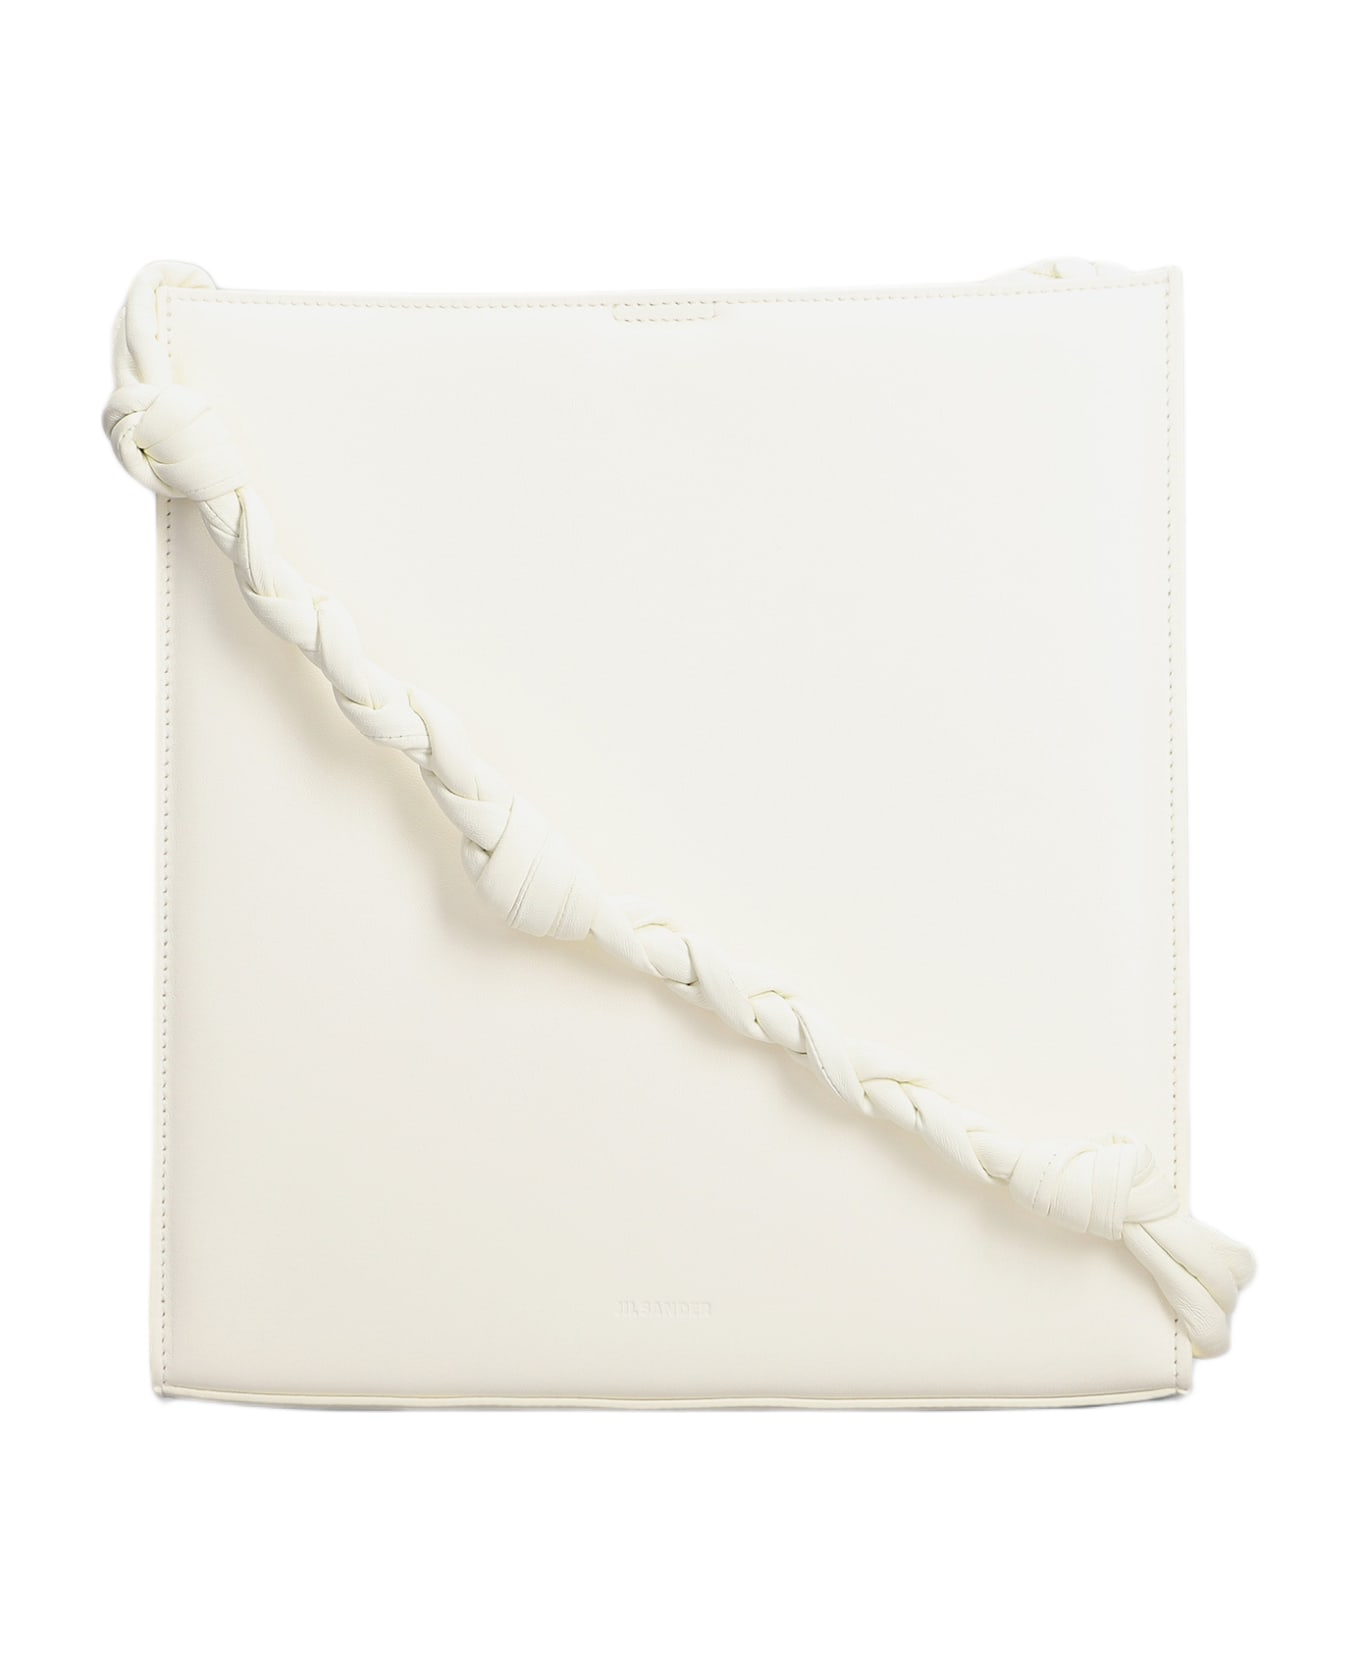 Jil Sander Shoulder Bag In White Leather - white